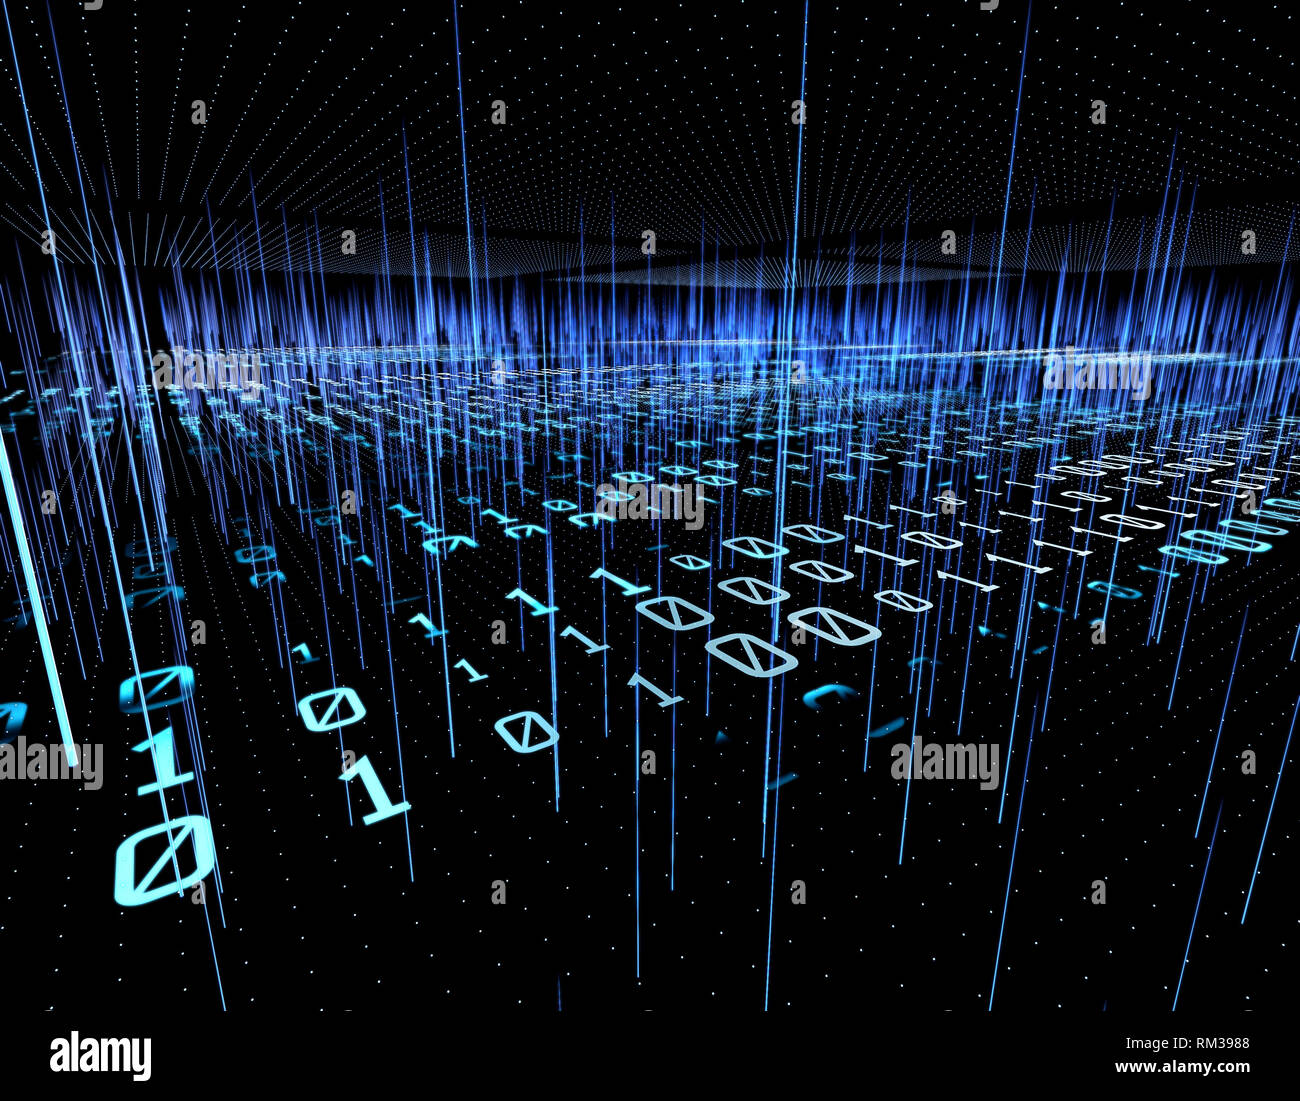 Big Data Technology and Network Communication Stock Photo